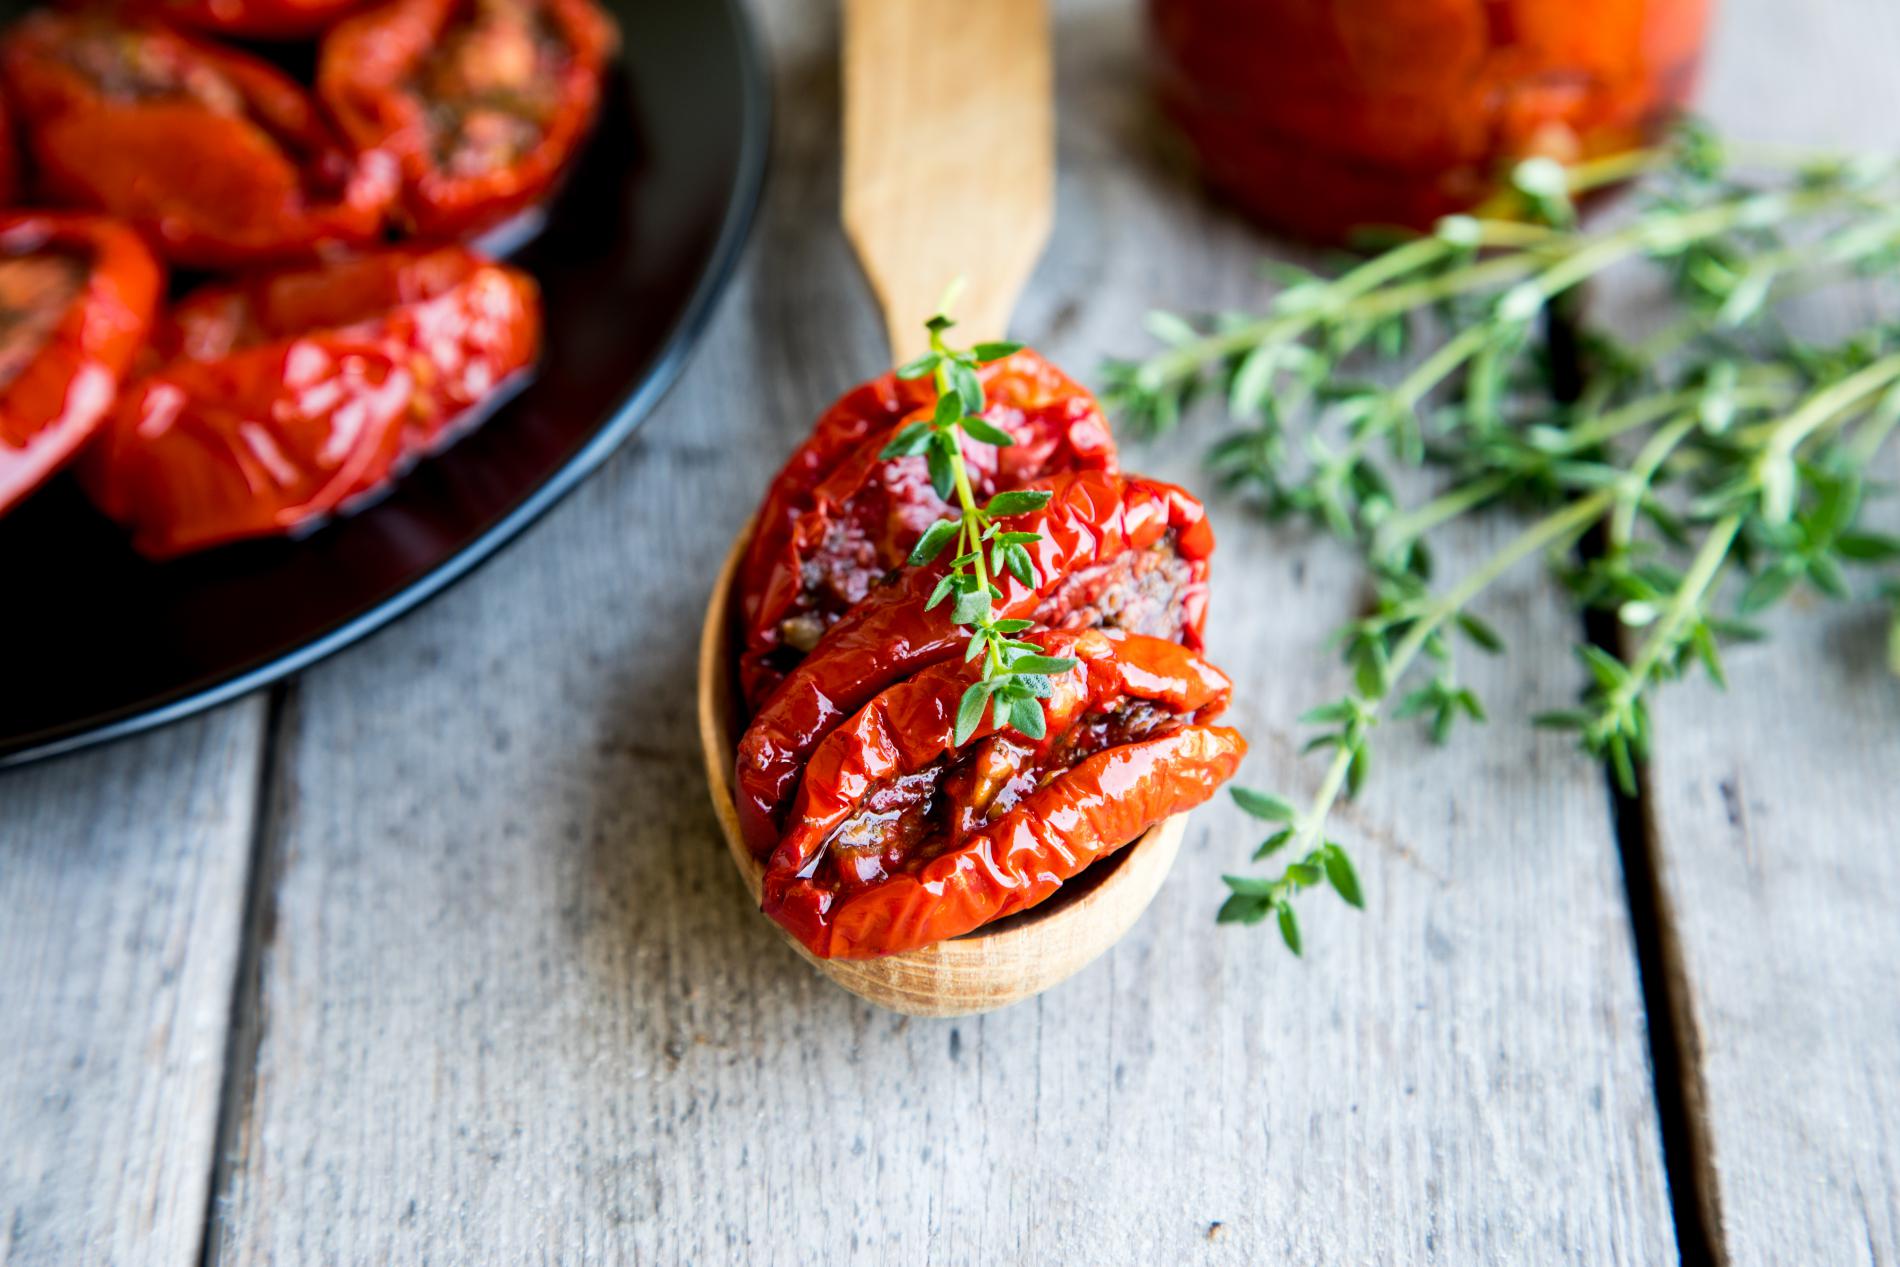 Tomates séchées dans l'huile – Gourmande boutique